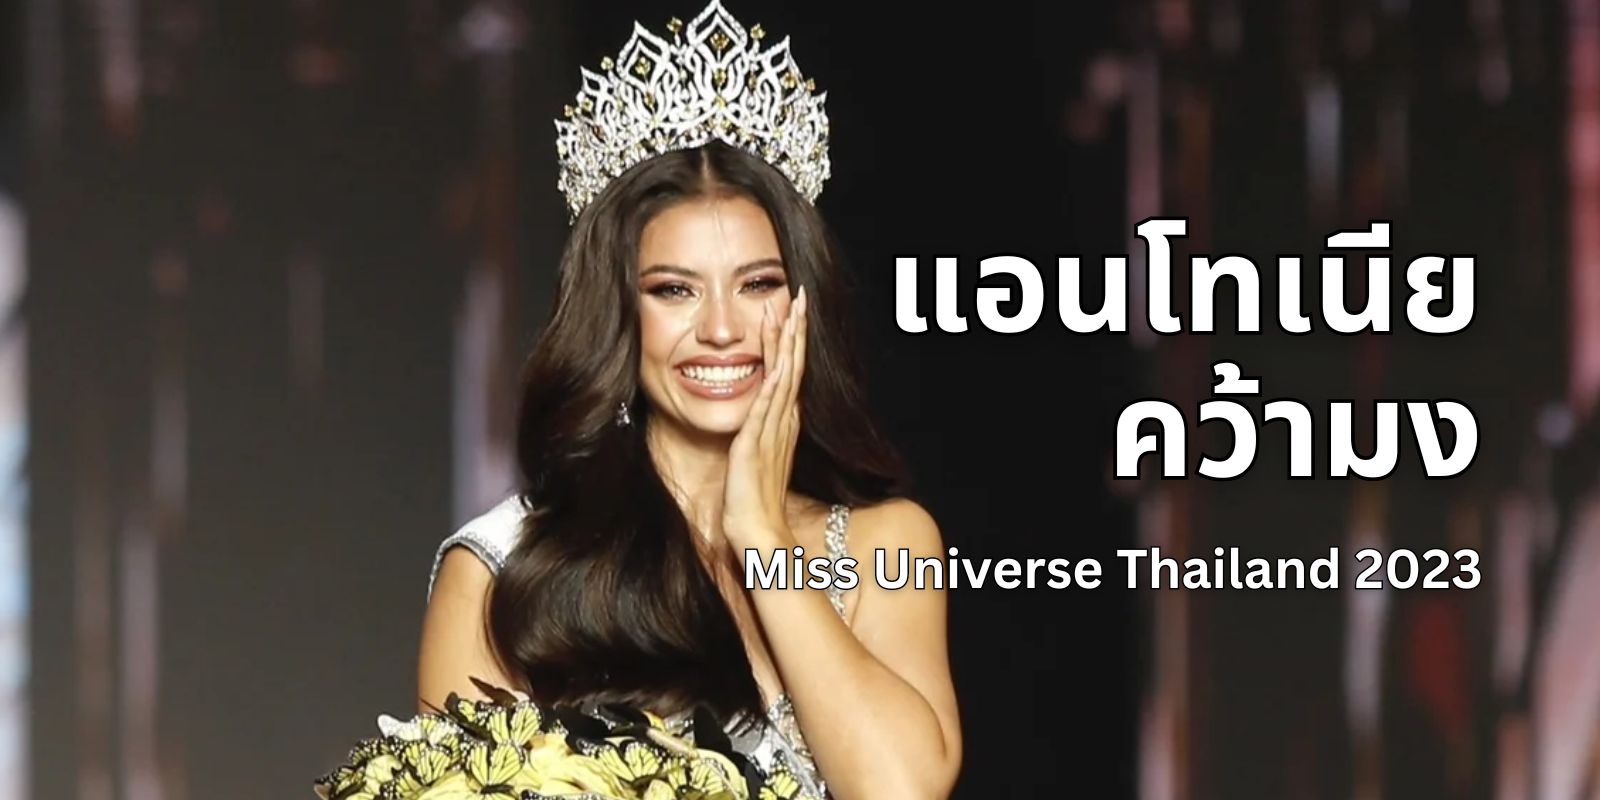 ทำความรู้จัก แอนโทเนีย โพซิ้ว ผู้คว้ามง Miss Universe Thailand คนล่าสุด